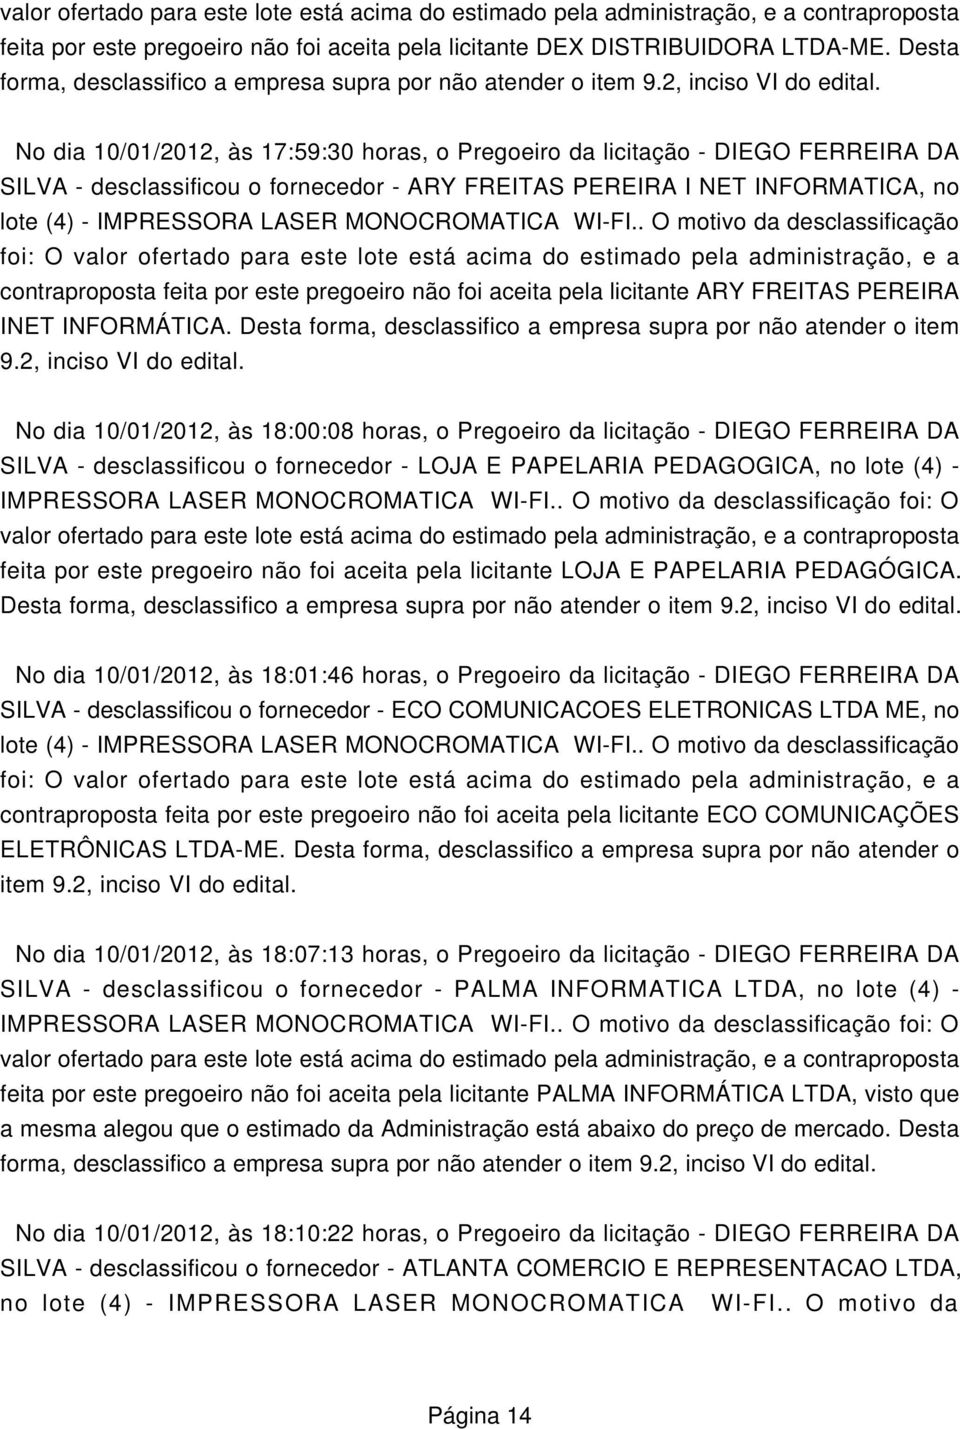 No dia 10/01/2012, às 17:59:30 horas, o Pregoeiro da licitação - DIEGO FERREIRA DA SILVA - desclassificou o fornecedor - ARY FREITAS PEREIRA I NET INFORMATICA, no lote (4) - IMPRESSORA LASER